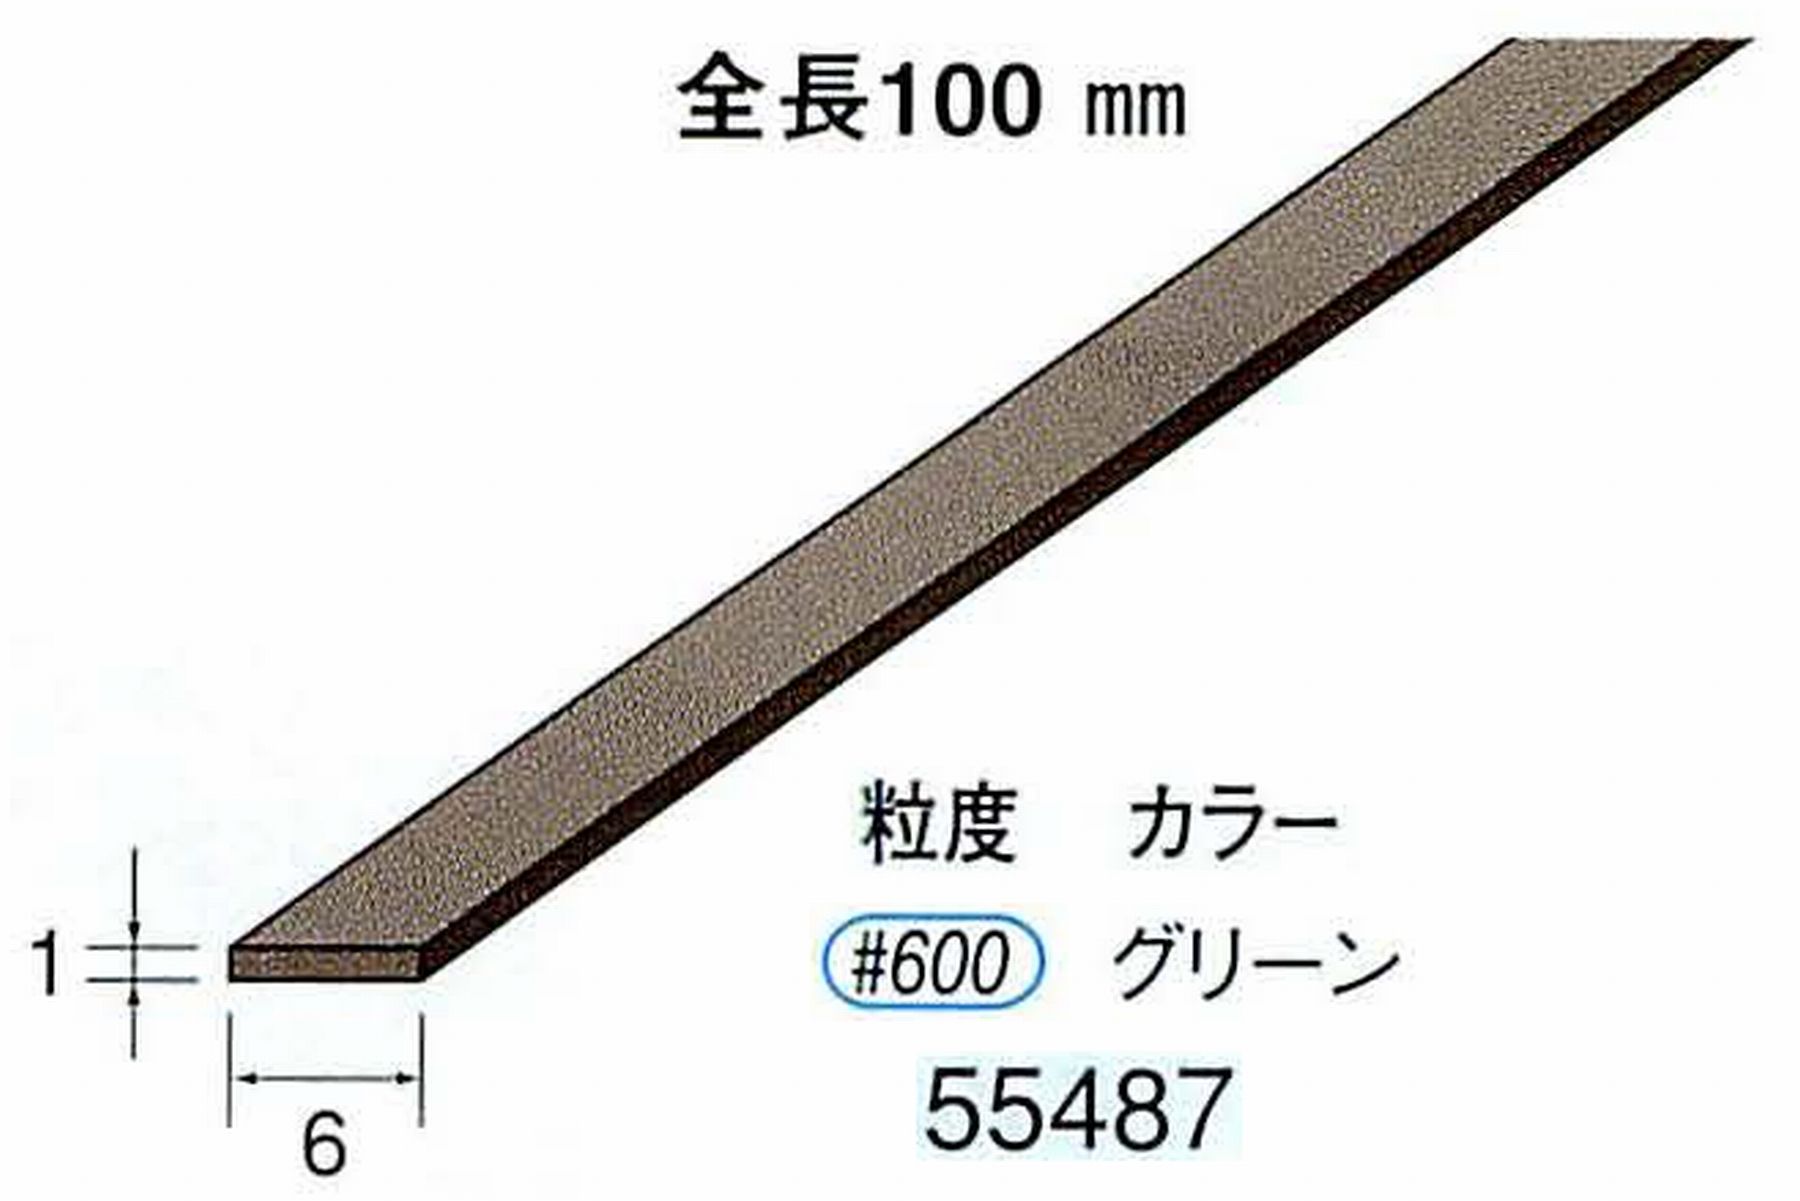 ナカニシ/NAKANISHI ダイヤモンドセラファイバー砥石 全長100mm グリーン 55487